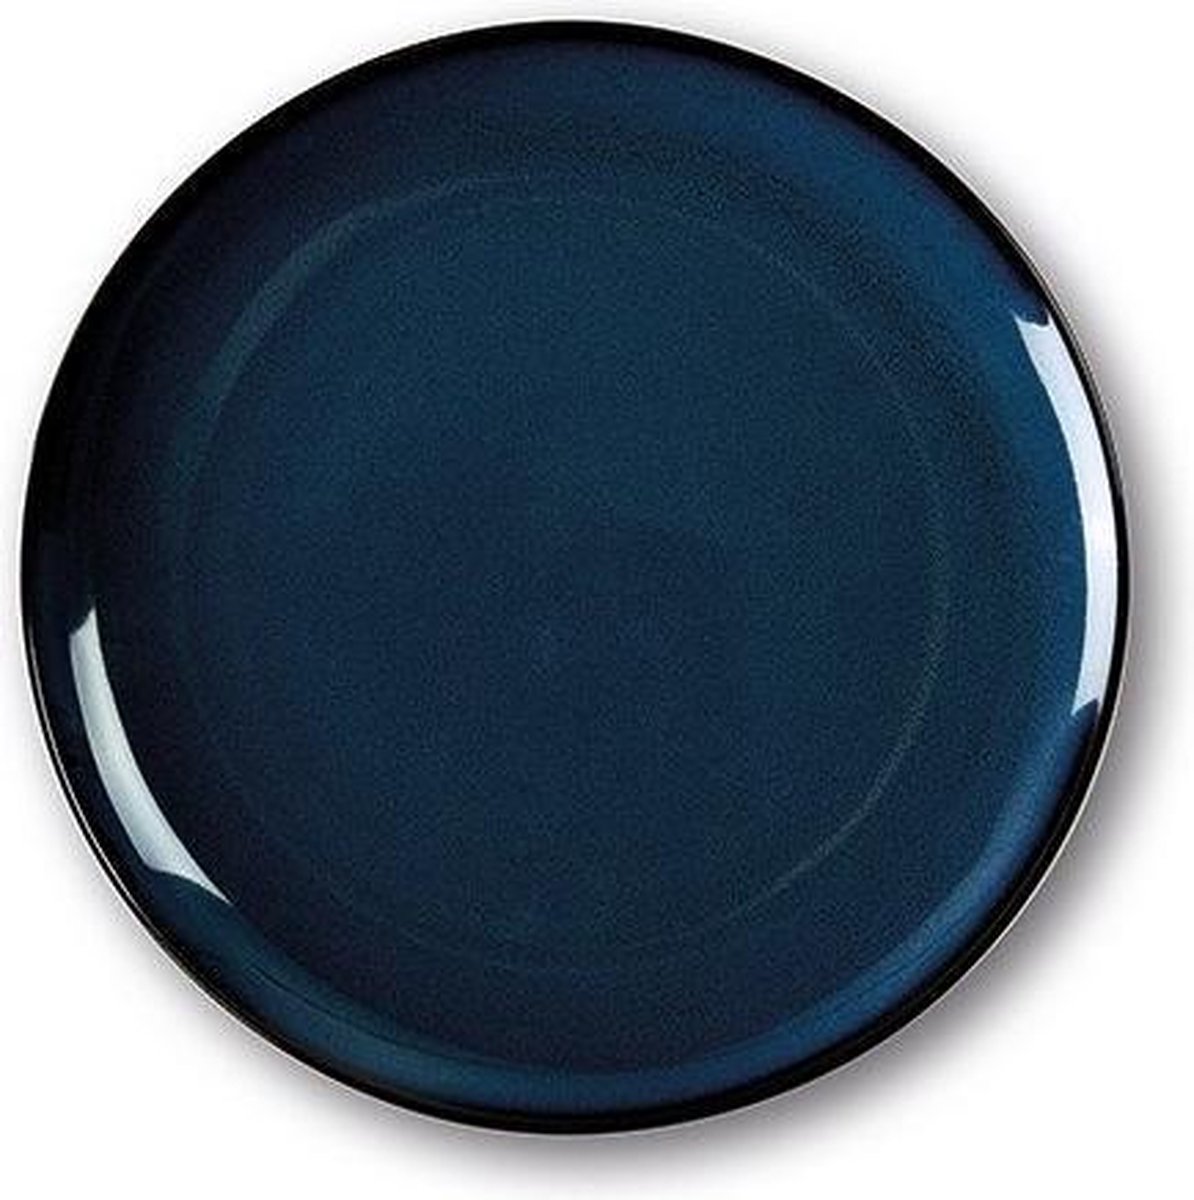 SanoDeGusto - tempcontrol bord - CADEAU tip - voorgerecht / dessert - koude gerechten - diepvries bestendig - 27cm - donker blauw - bord - 2 stuks